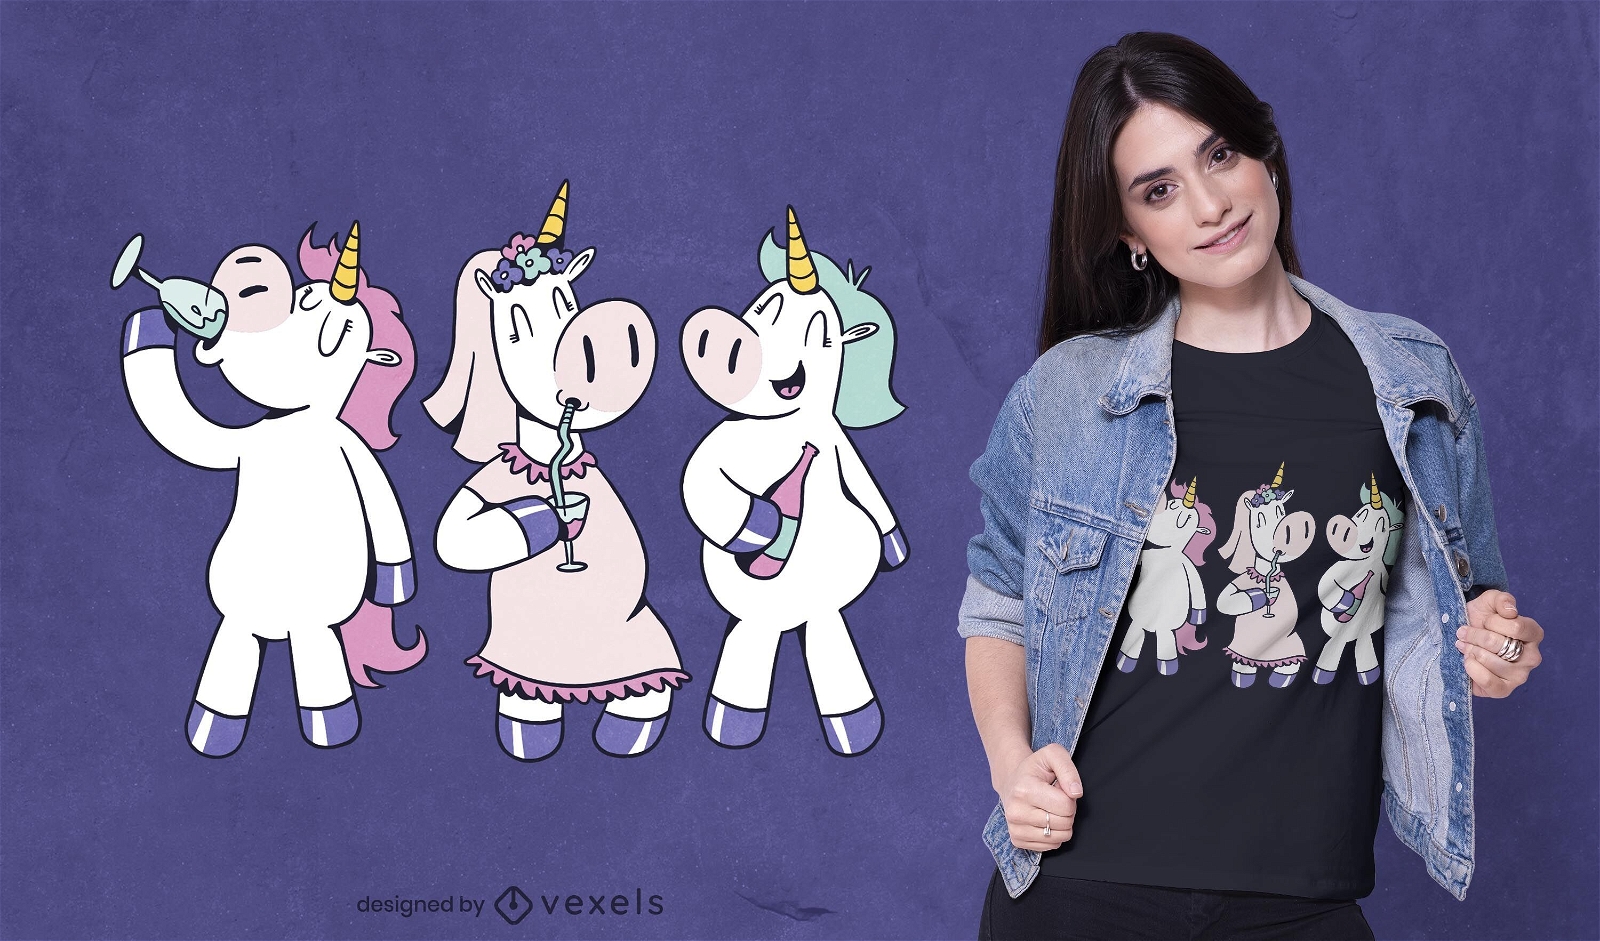 Unicorn party t-shirt design